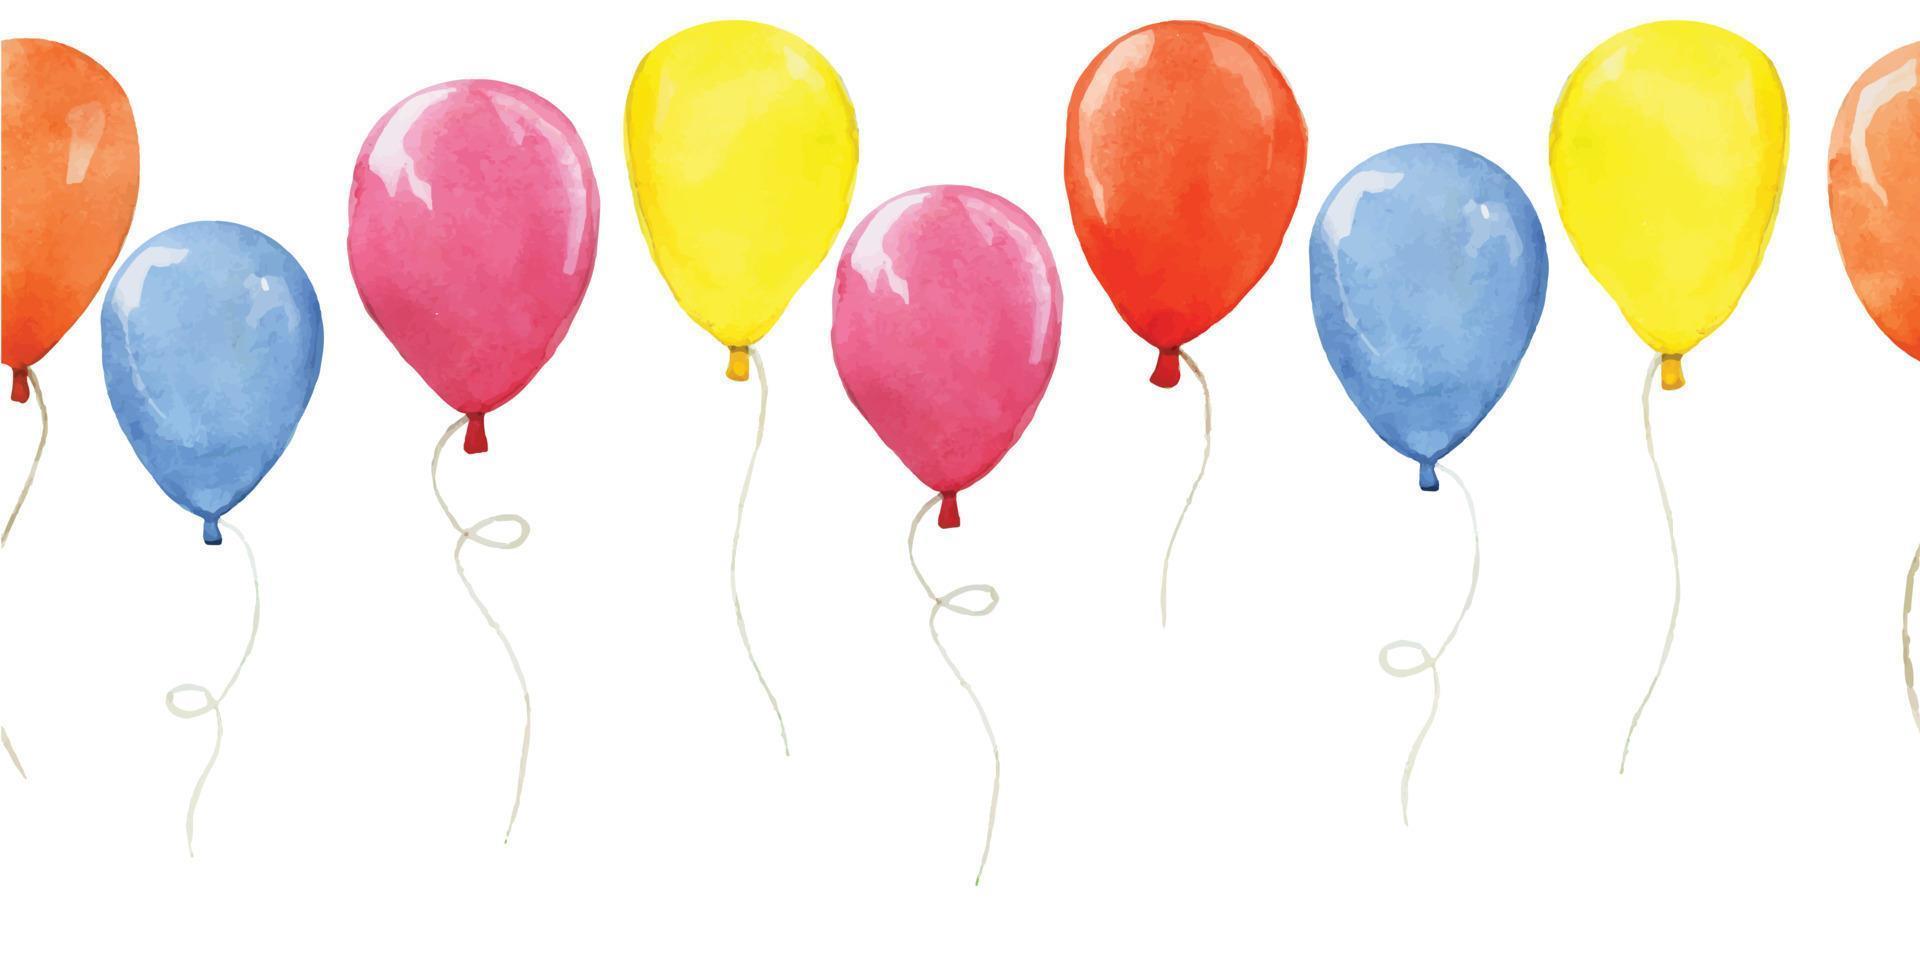 Aquarell nahtlose Grenze, Muster mit farbigen Luftballons. Clipart, Design für Geburtstag, Urlaub, Party. süße Luftballons in blau, rot, gelb und pink vektor